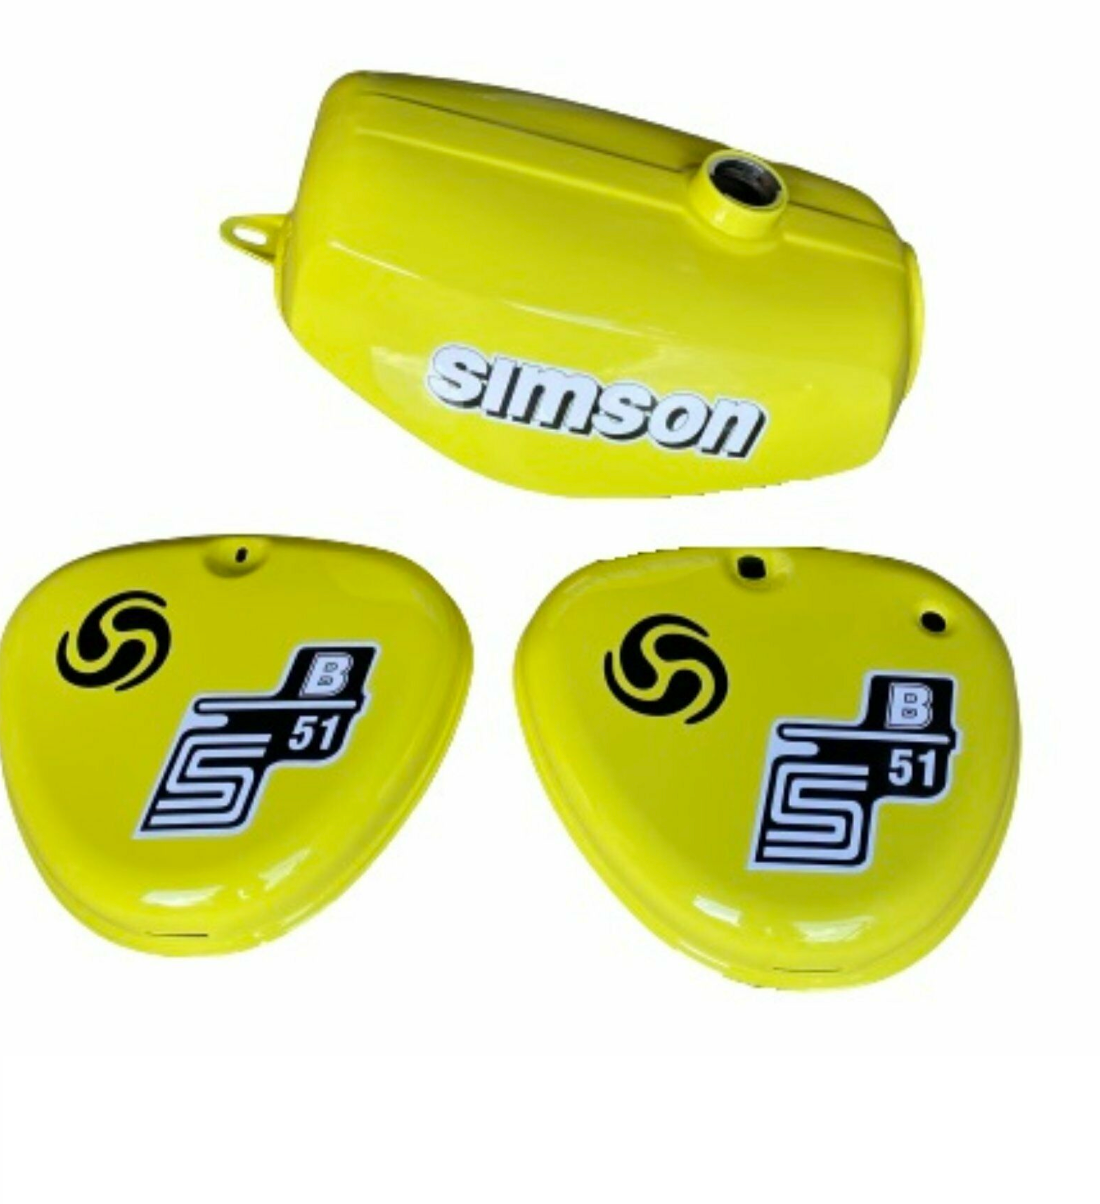 Tank Bananen-Form im Set mit Seitendeckel links und rechts für Simson S50  S51 S70, Farbe Billardgrün für Simson S50, S51, S70